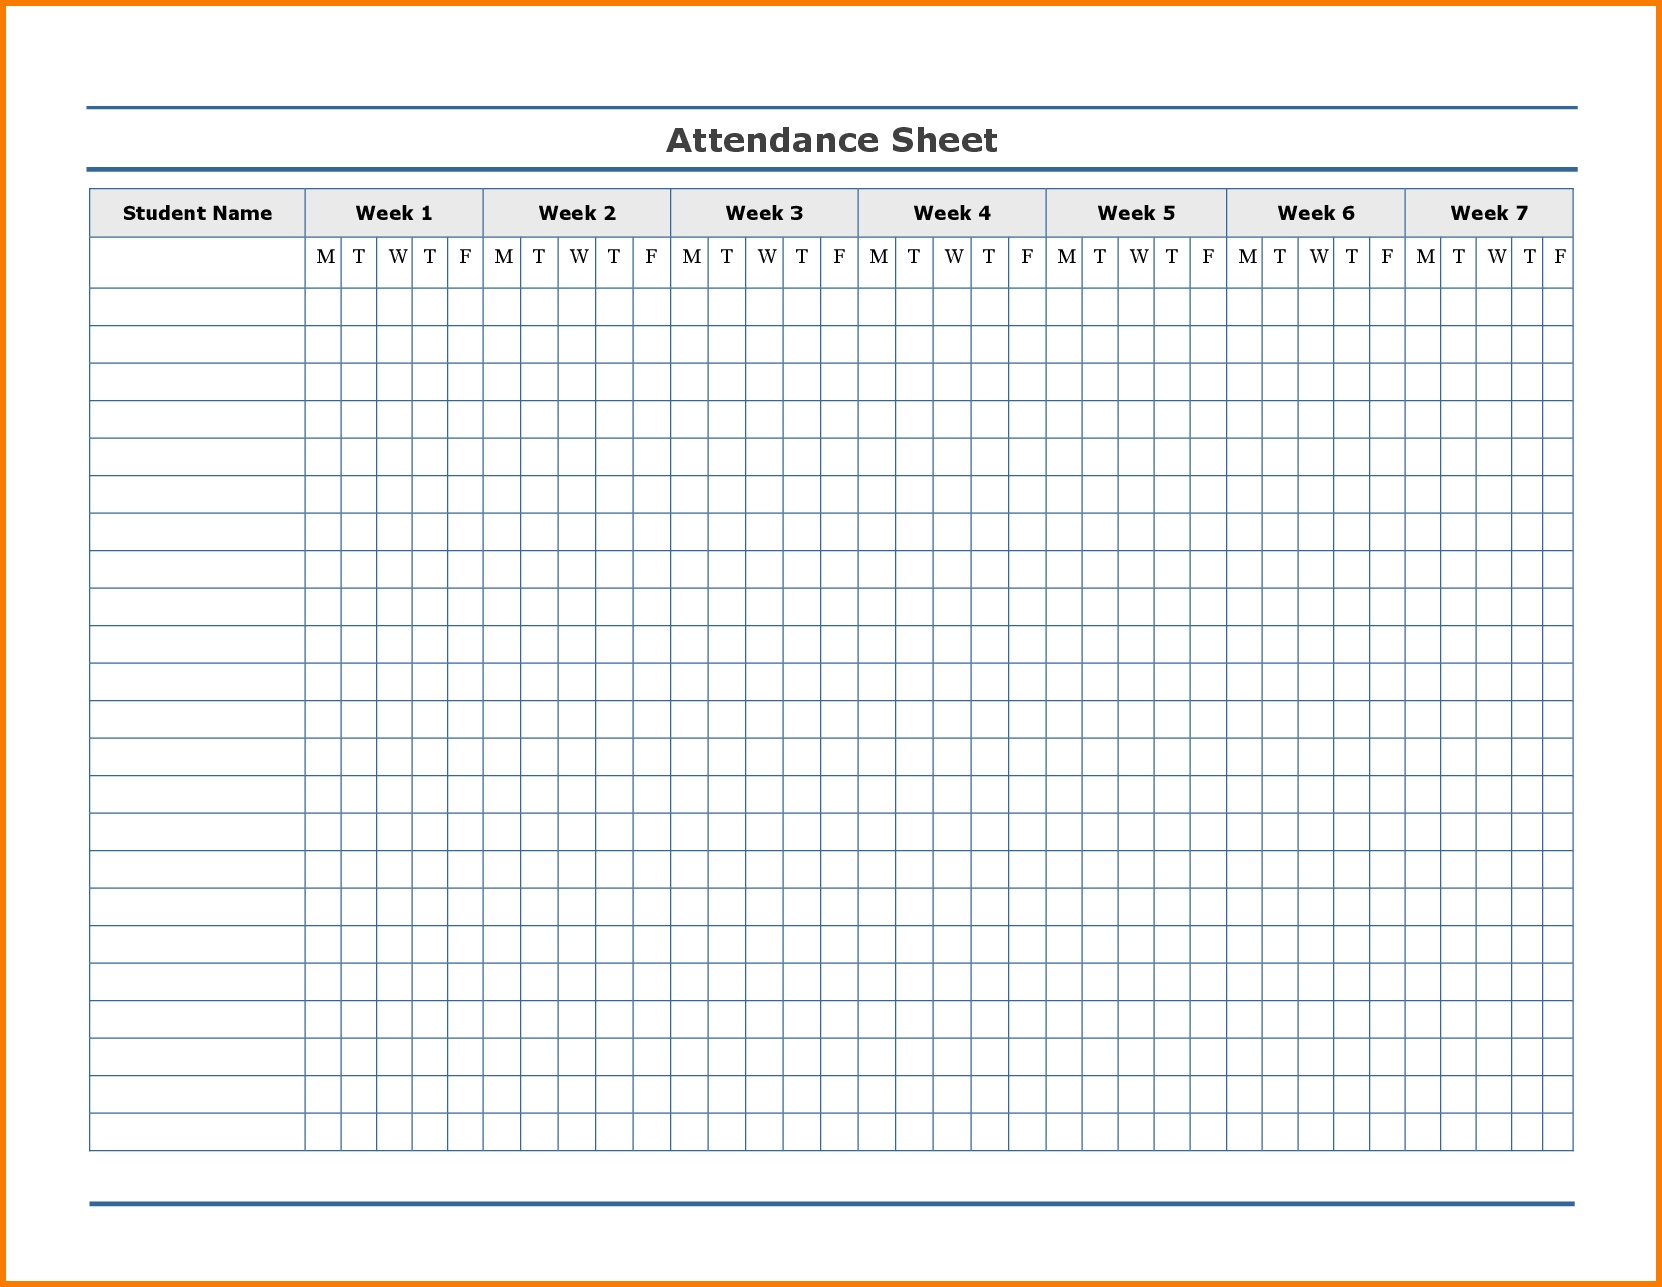 Printable Attendance Tracker | Attendance Chart, Attendance  2021 Attendance Calendar